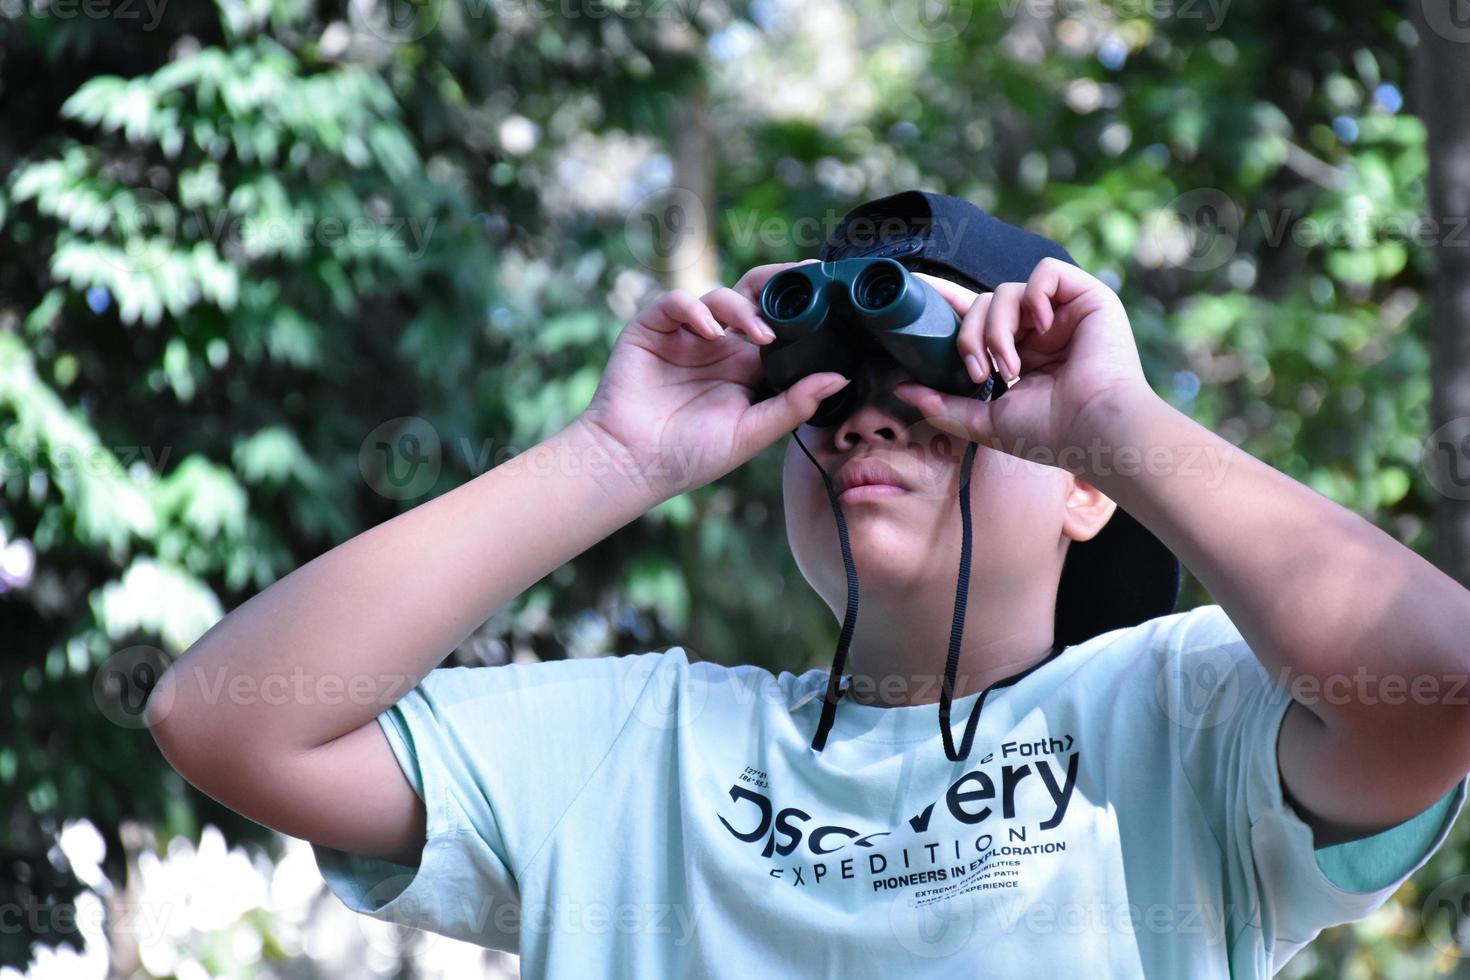 südostasiatische jungen benutzen ferngläser, um vögel im tropischen wald zu beobachten, idee zum lernen von kreaturen und wild lebenden tieren außerhalb des klassenzimmers. foto